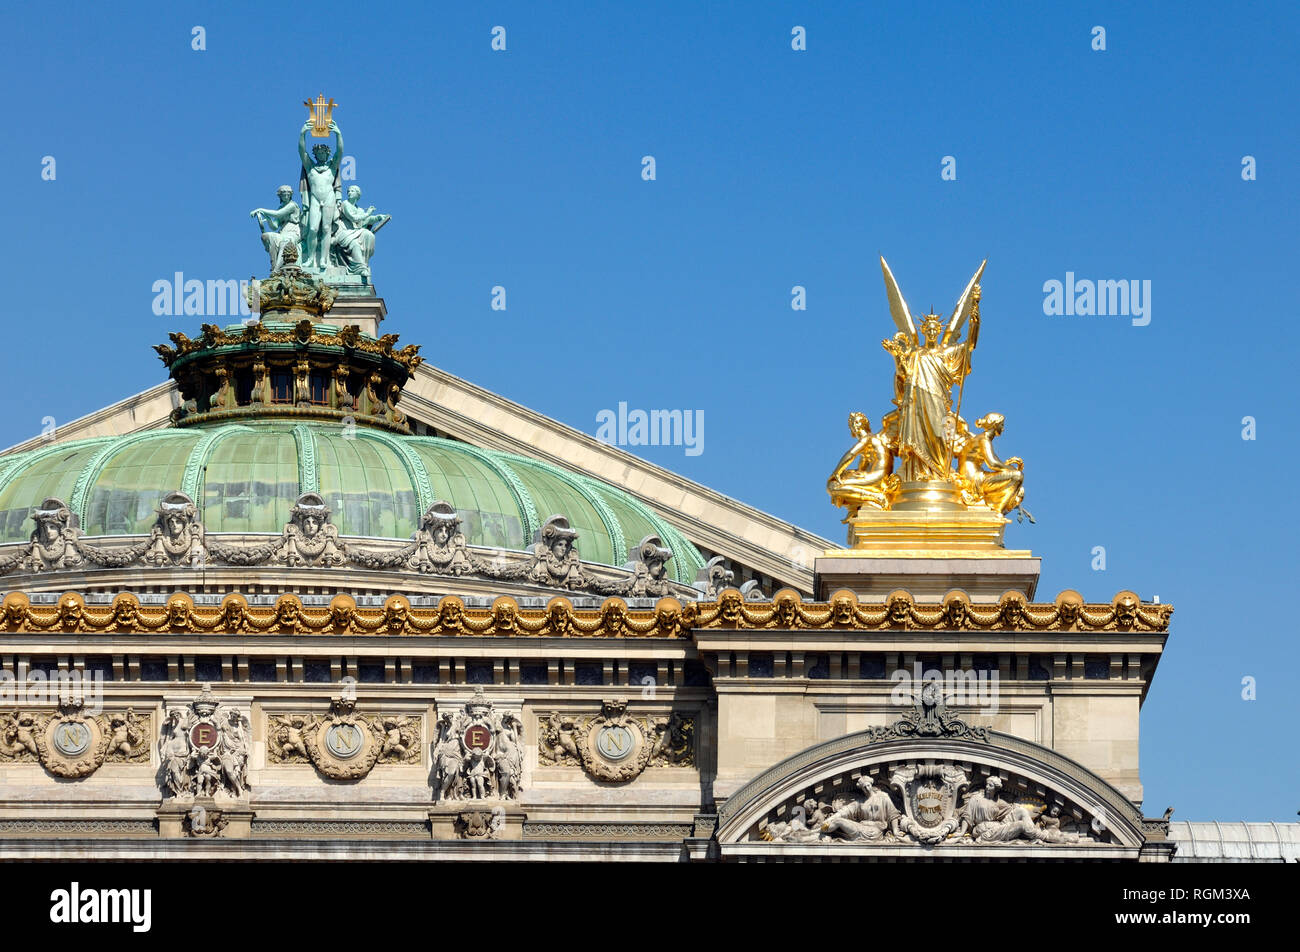 Détail de toit baroque ou l'Opéra Garnier (1861-75) aka Palais Garnier, Opéra de Paris ou l'Opéra de Paris Paris France Banque D'Images